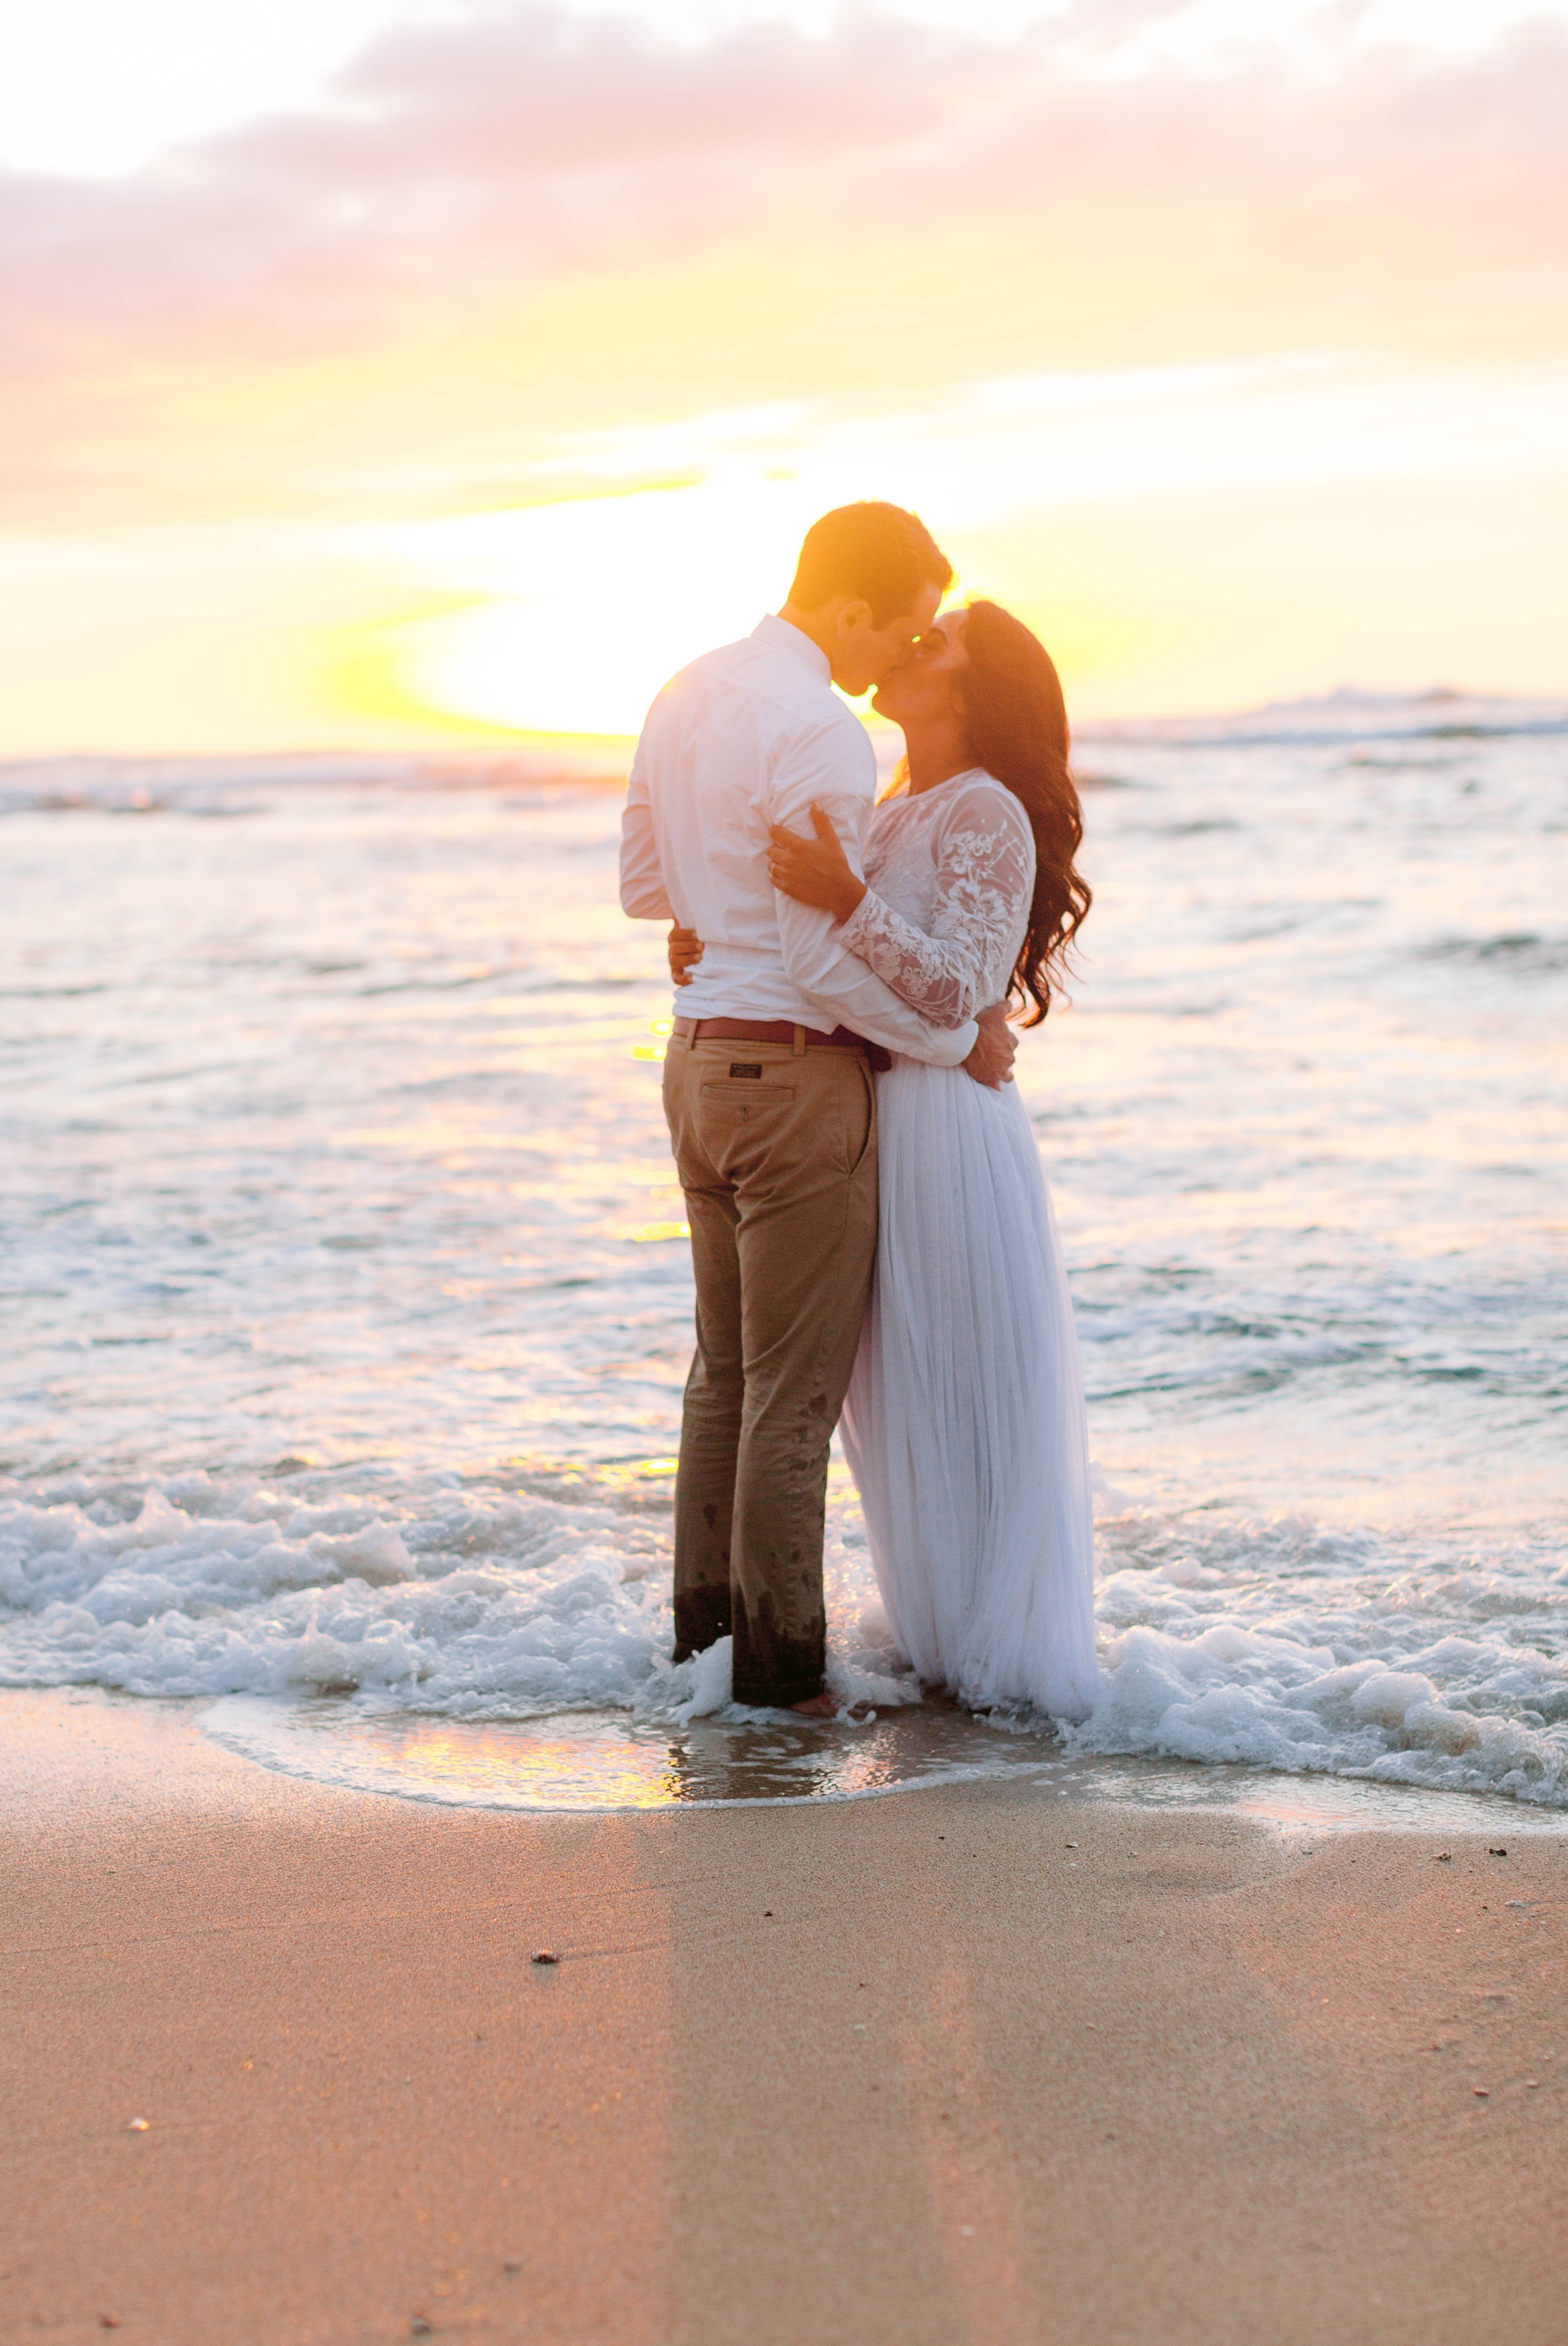  Bride and Groom - Wedding Portraits at Sunset in Hawaii - Ana + Elijah - Wedding at Loulu Palm in Haleiwa, HI - Oahu Hawaii Wedding Photographer - #hawaiiweddingphotographer #oahuweddings #hawaiiweddings 